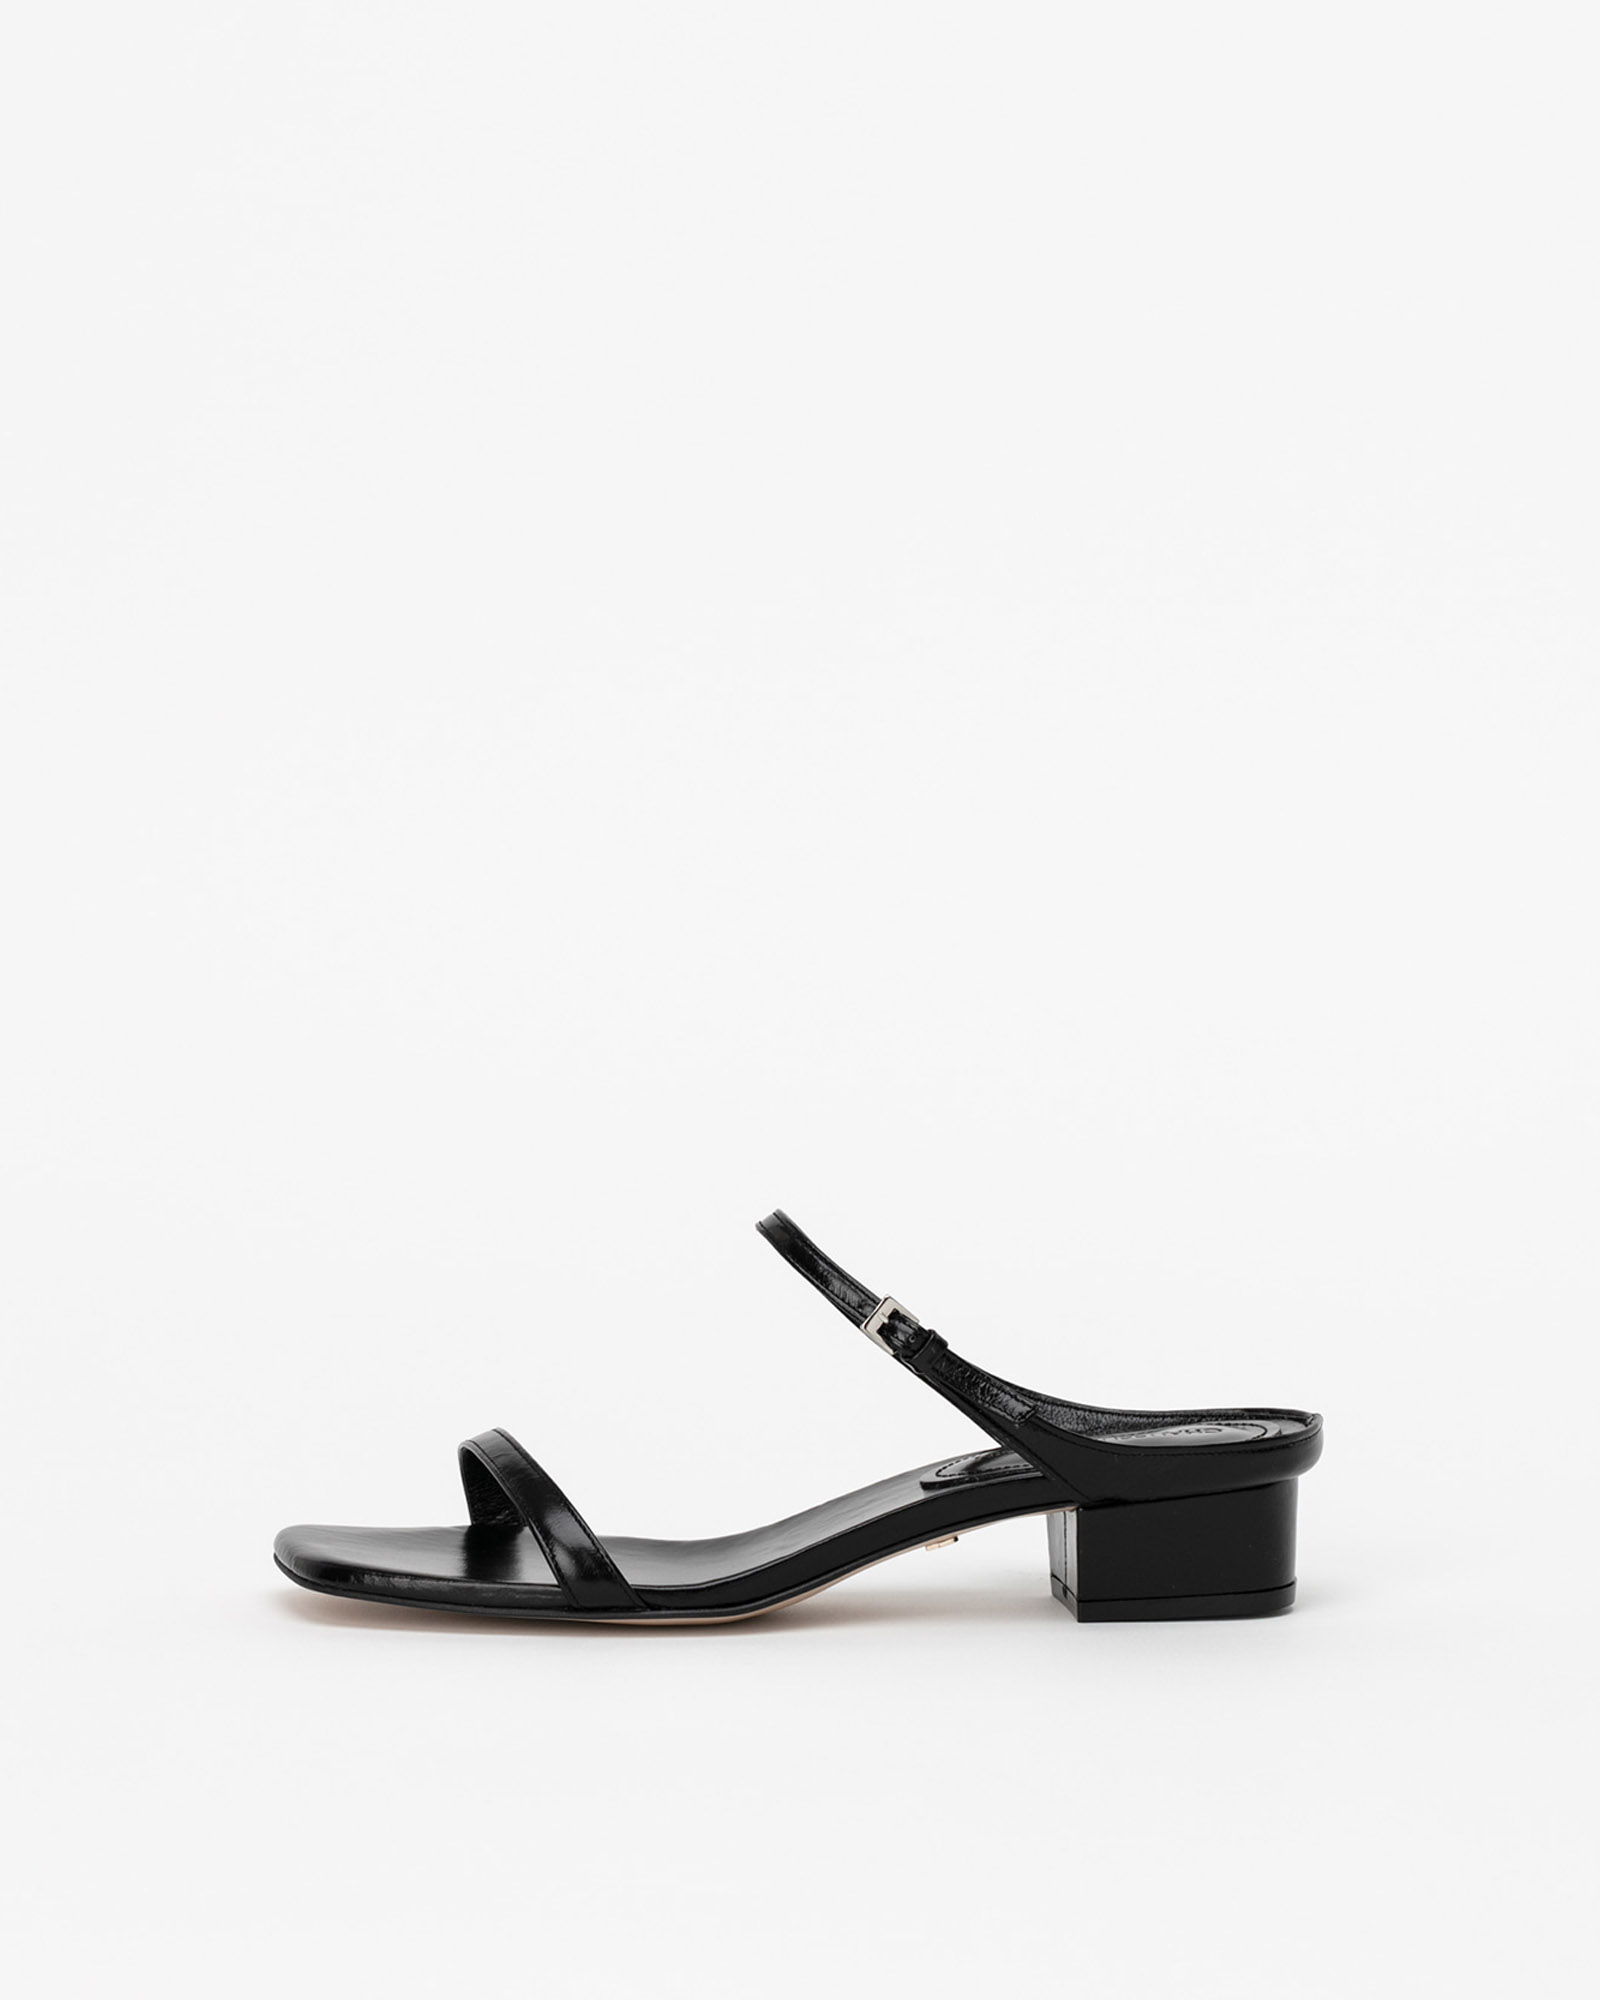 Sequire Buckled Strap Slide Sandals in Wrinkled Black